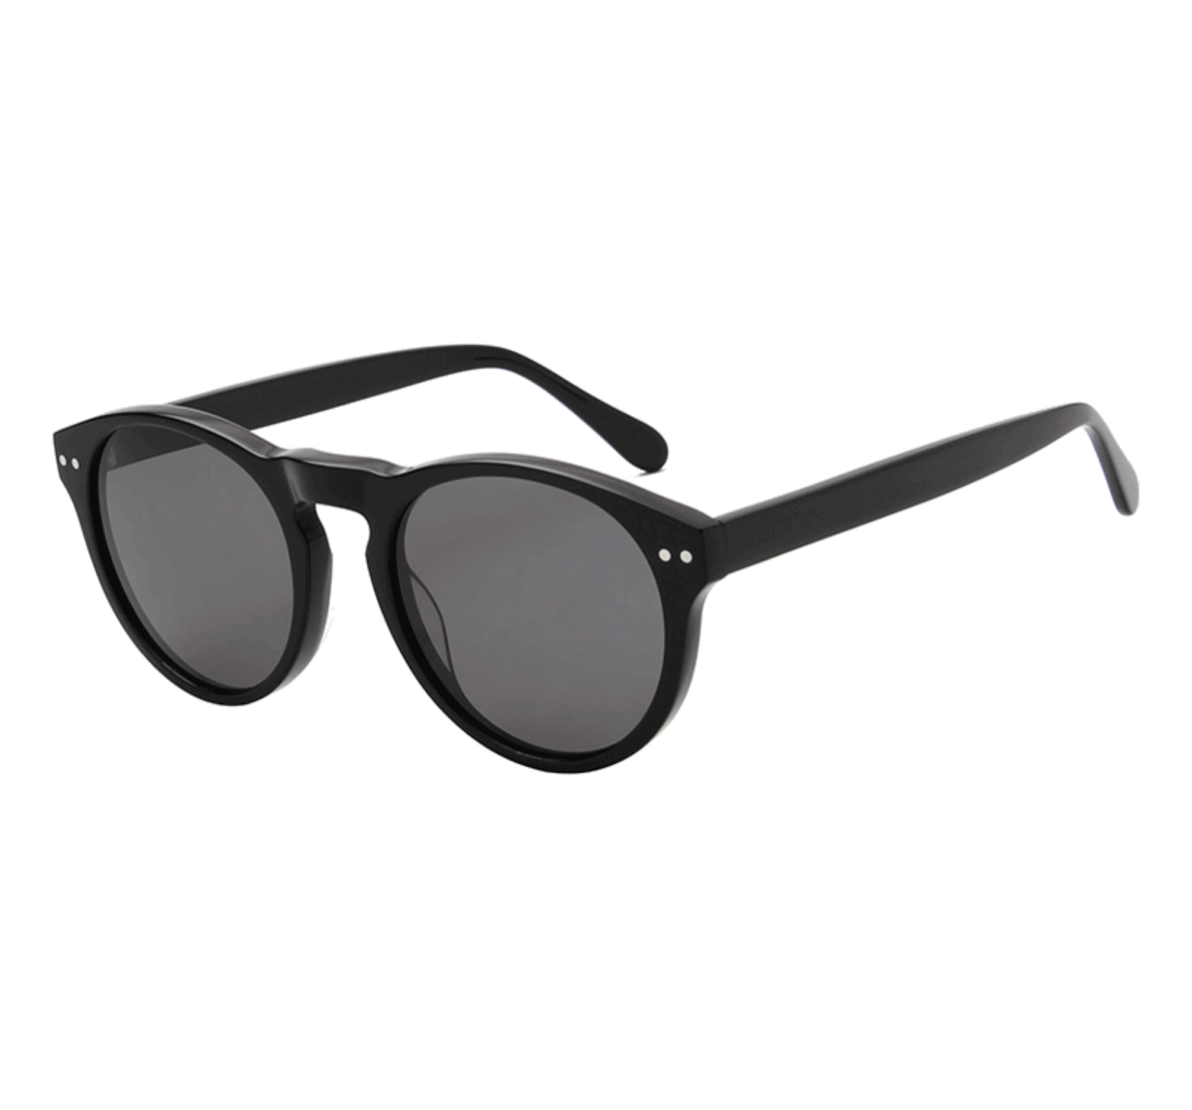 custom round plastic sunglasses, customized plastic sunglasses, custom sunglasses, round sunglasses plastic frame, round plastic frame sunglasses, custom sunglasses bulk, custom sunglasses manufacturers